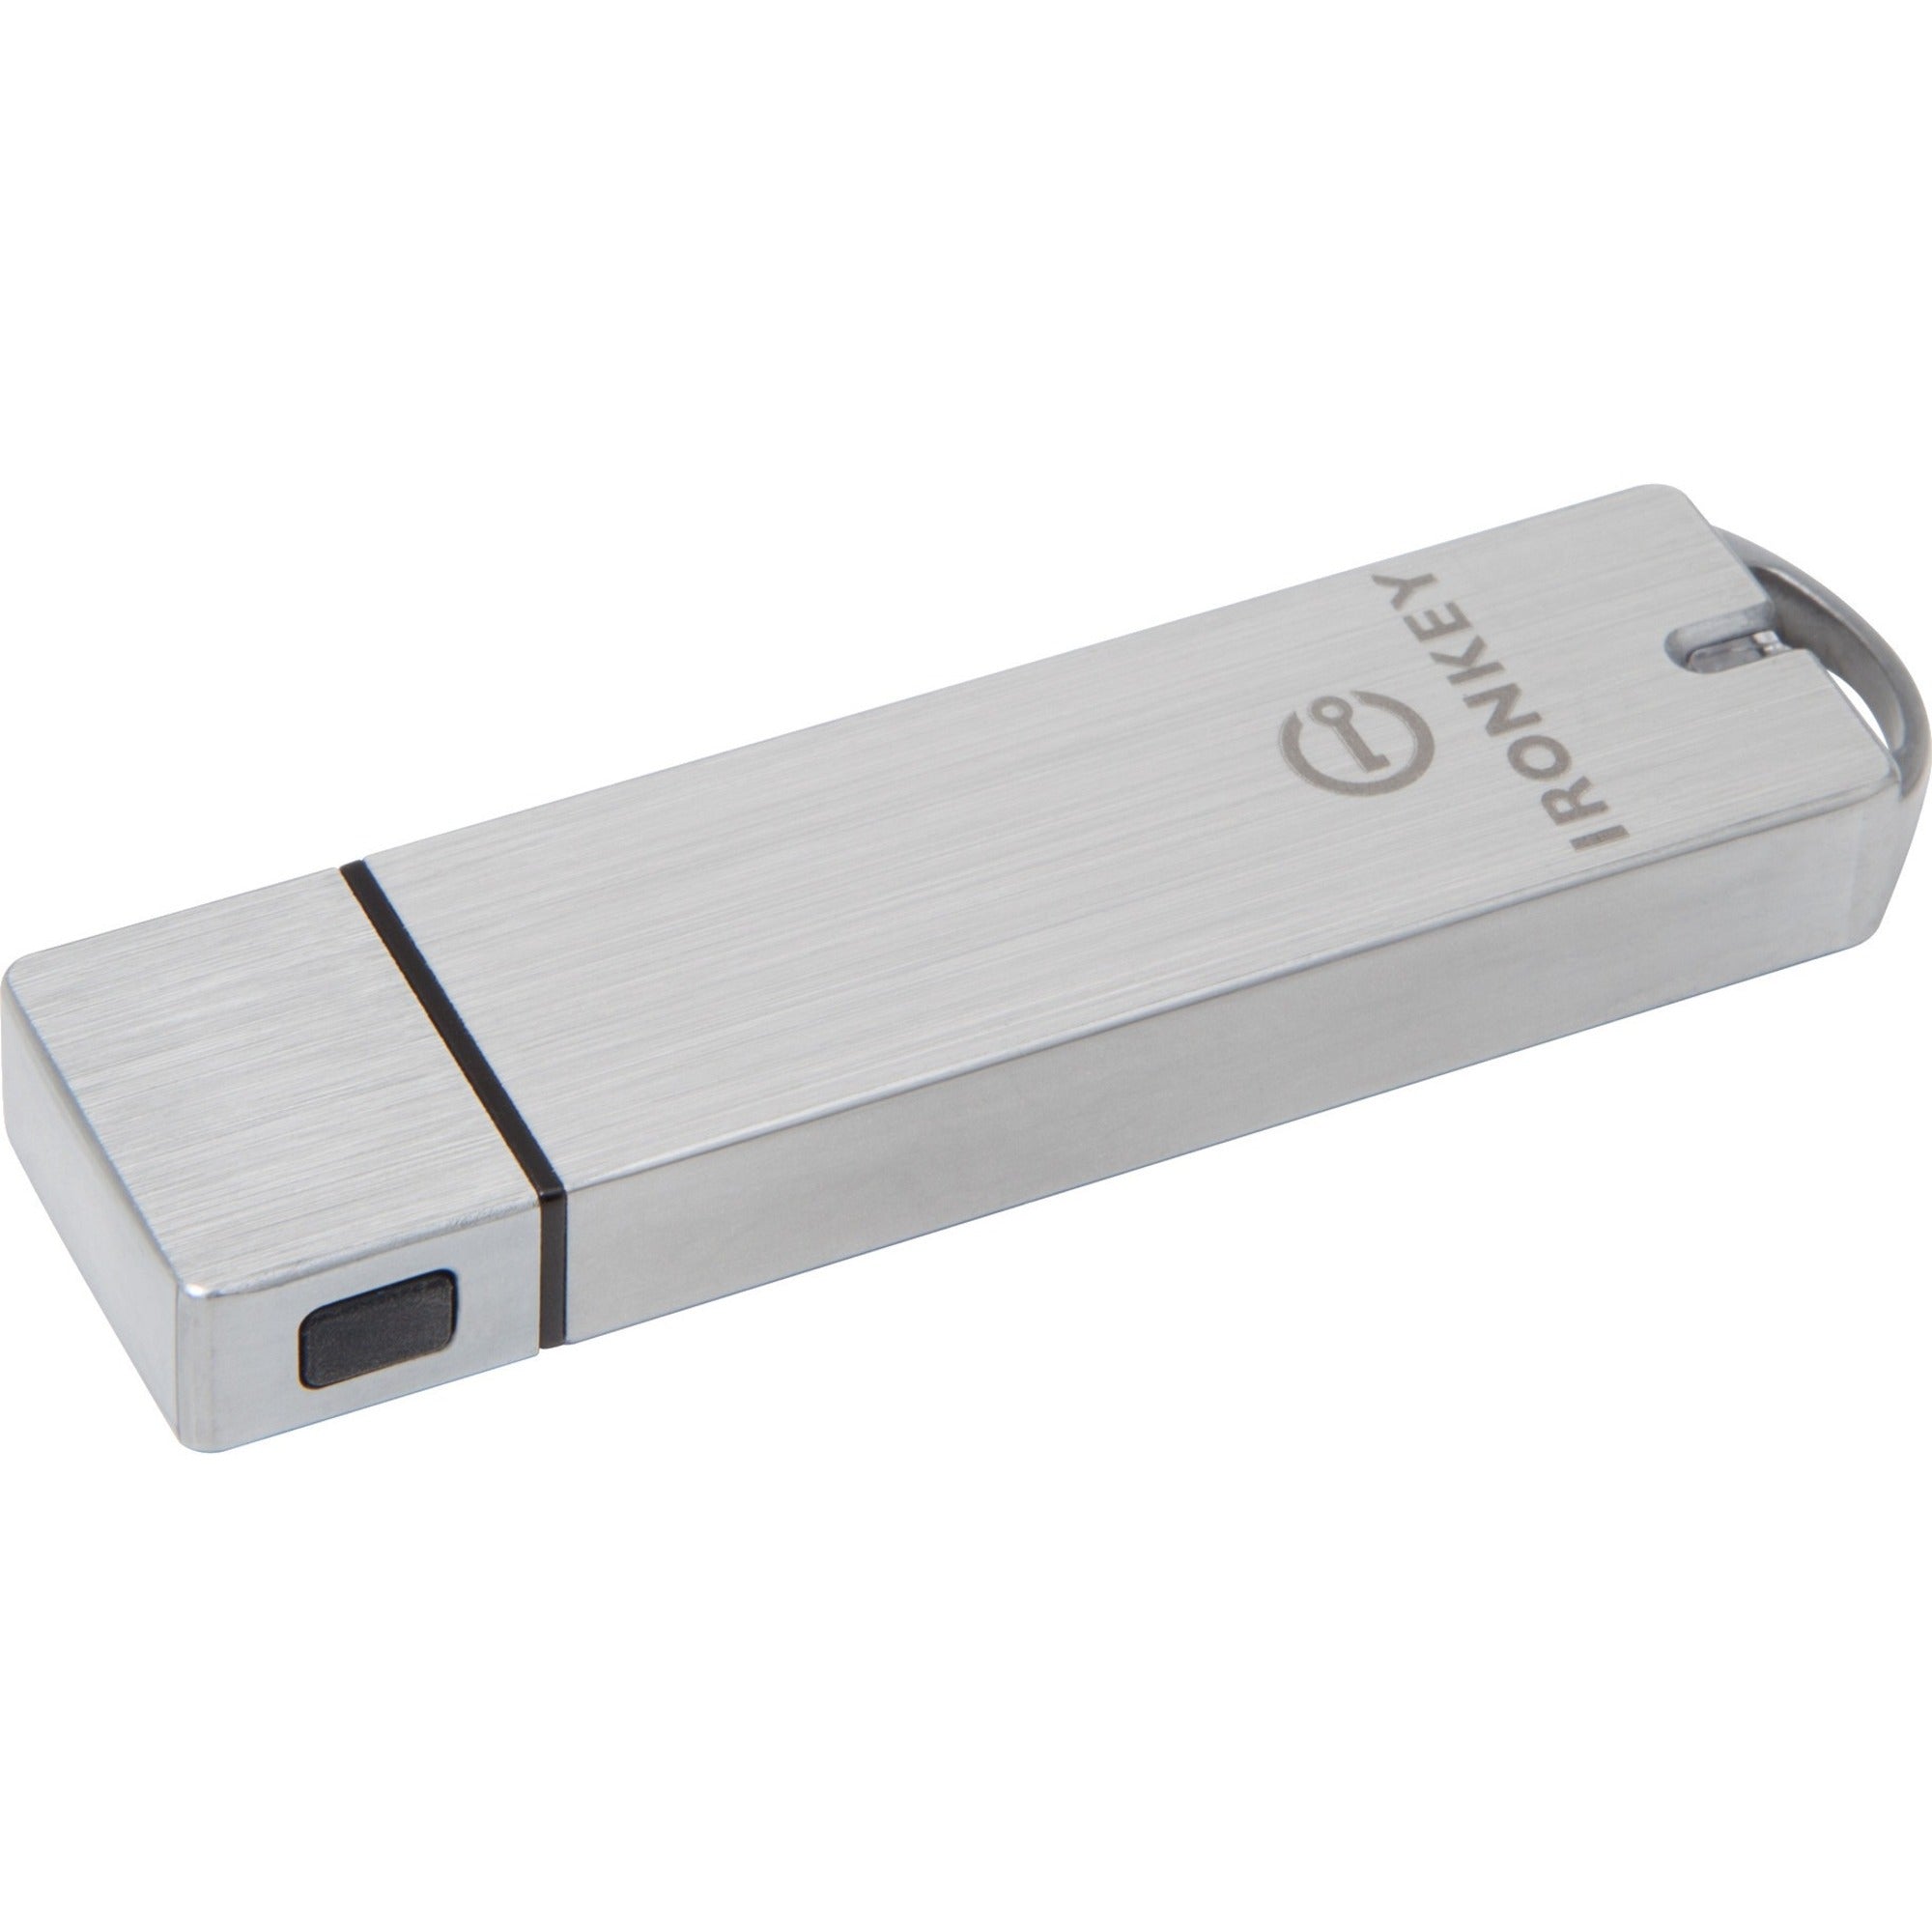 IronKey Basic S1000 Encrypted Flash Drive - IKS1000B/64GB